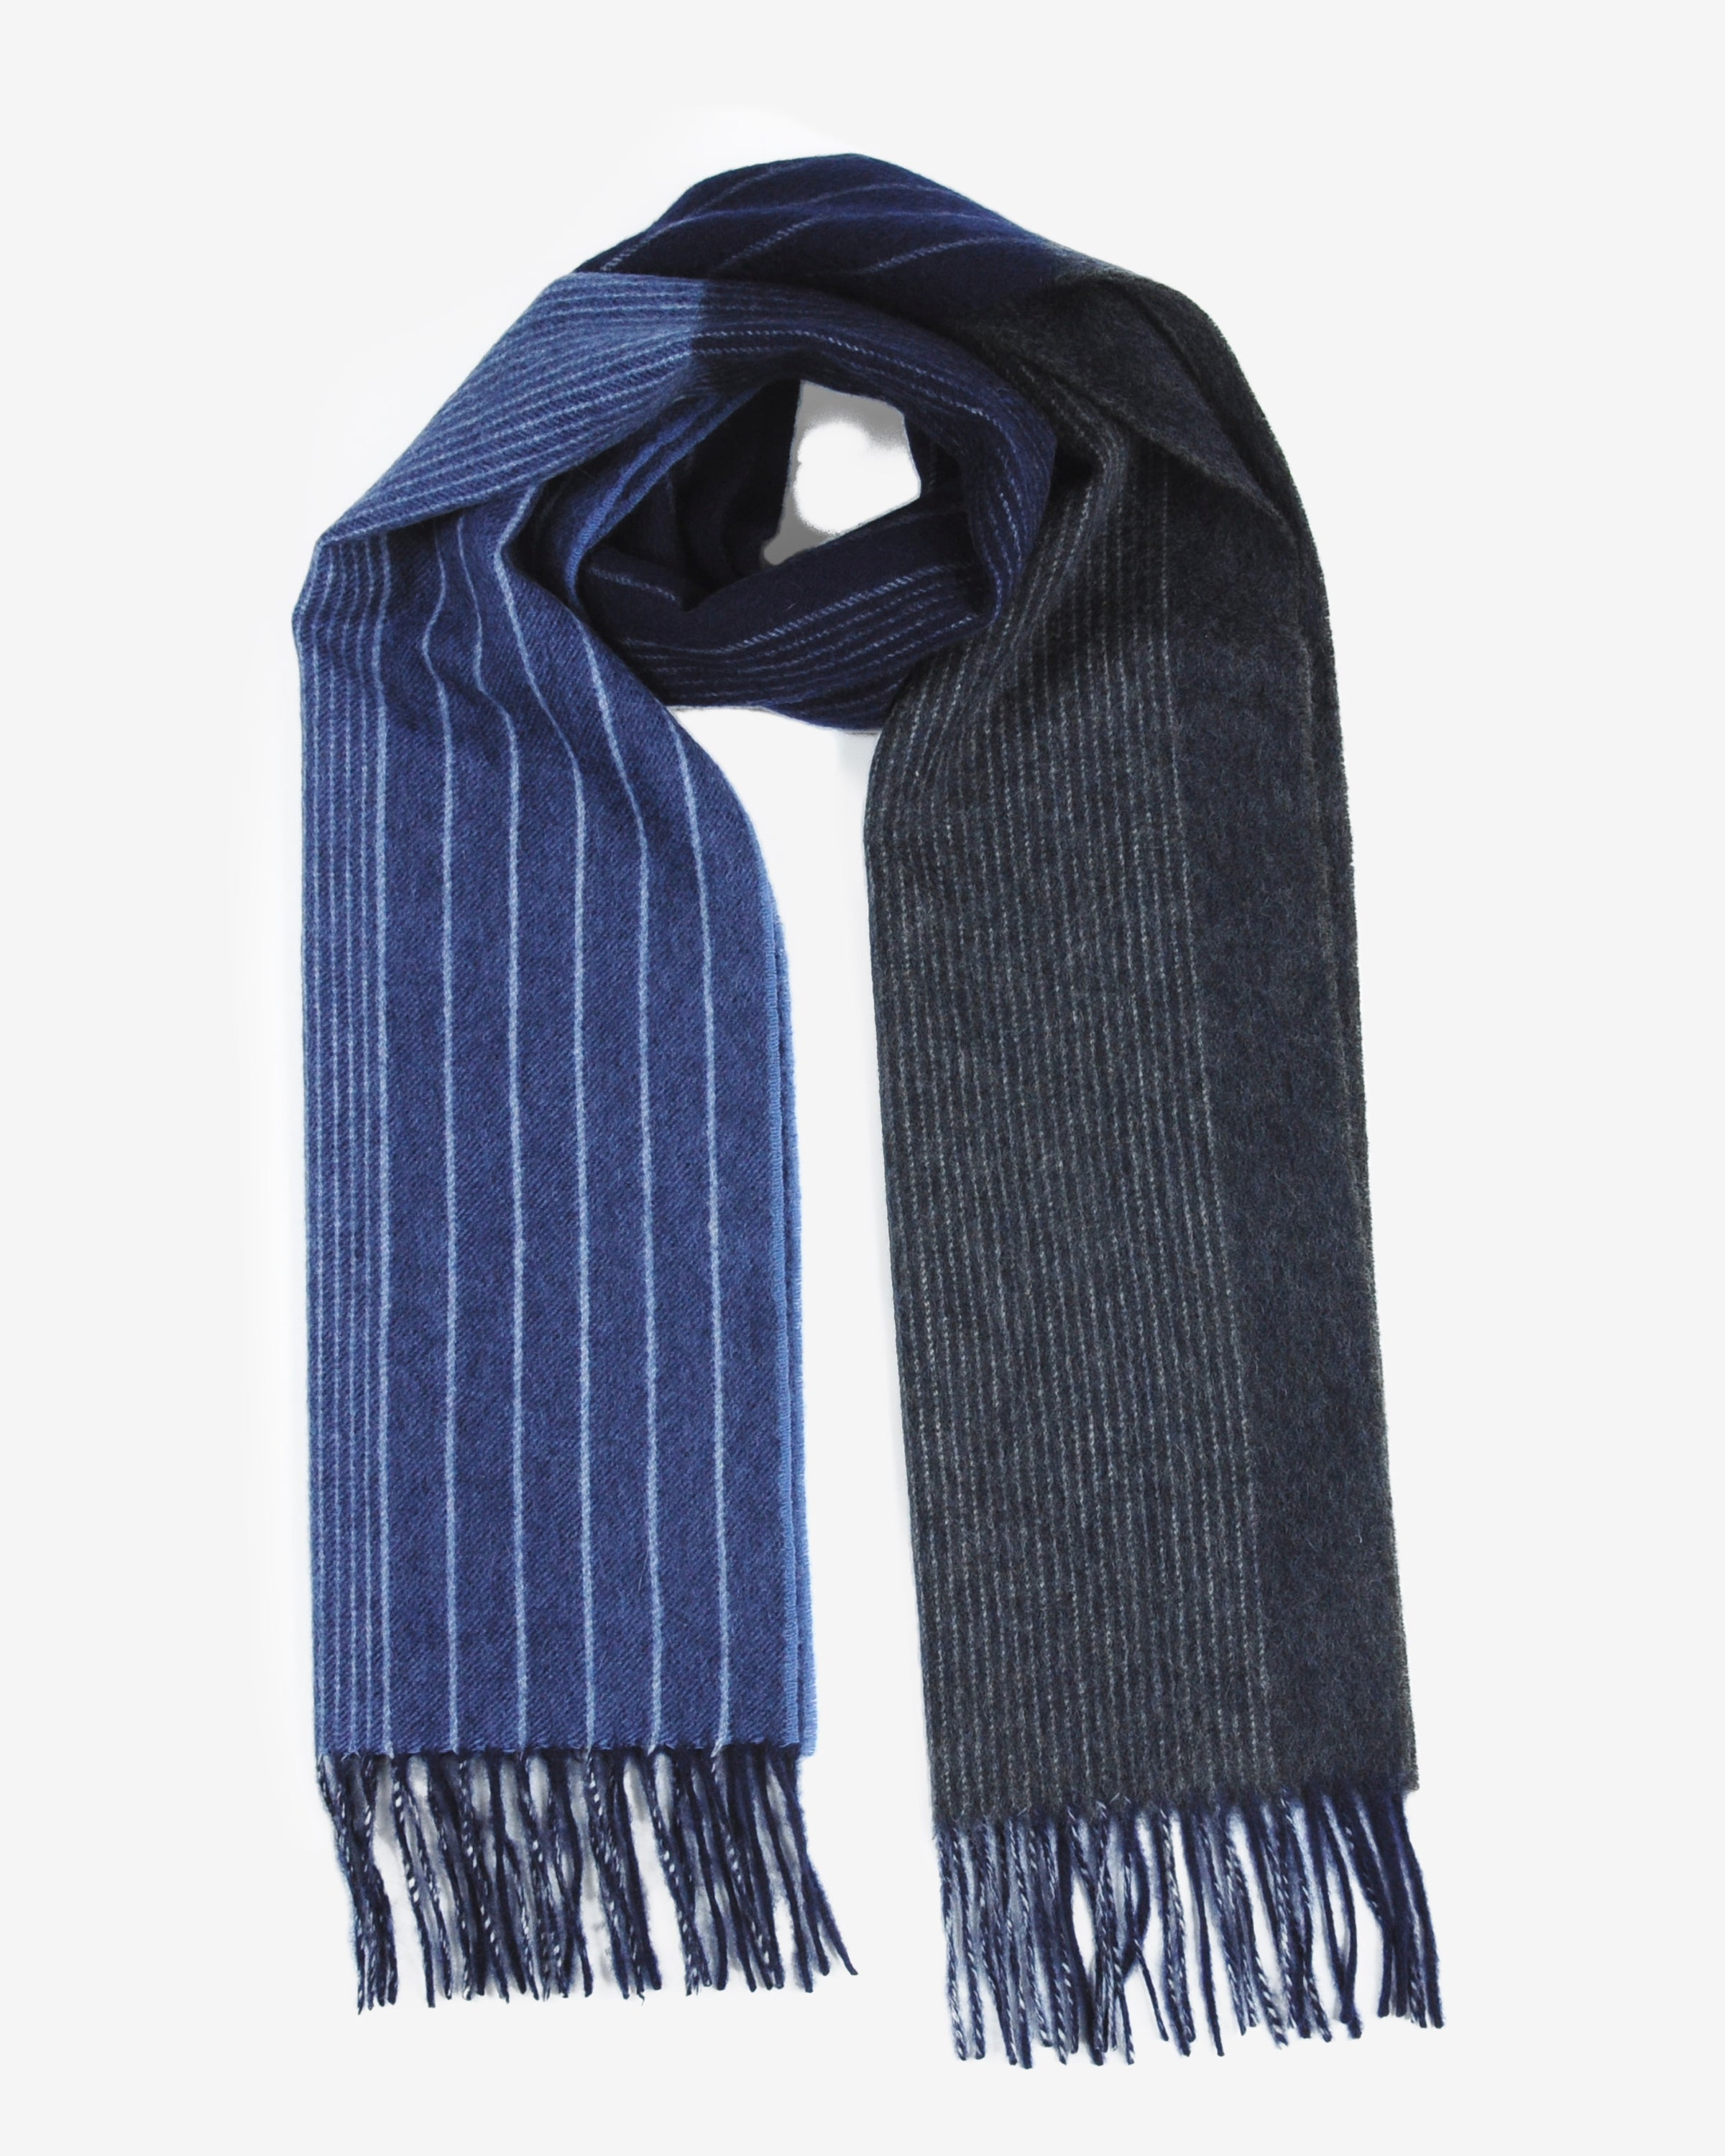 zweifarbiger Schal Damen und Herren aus 100% Kaschmir, gewebt gestreift blau